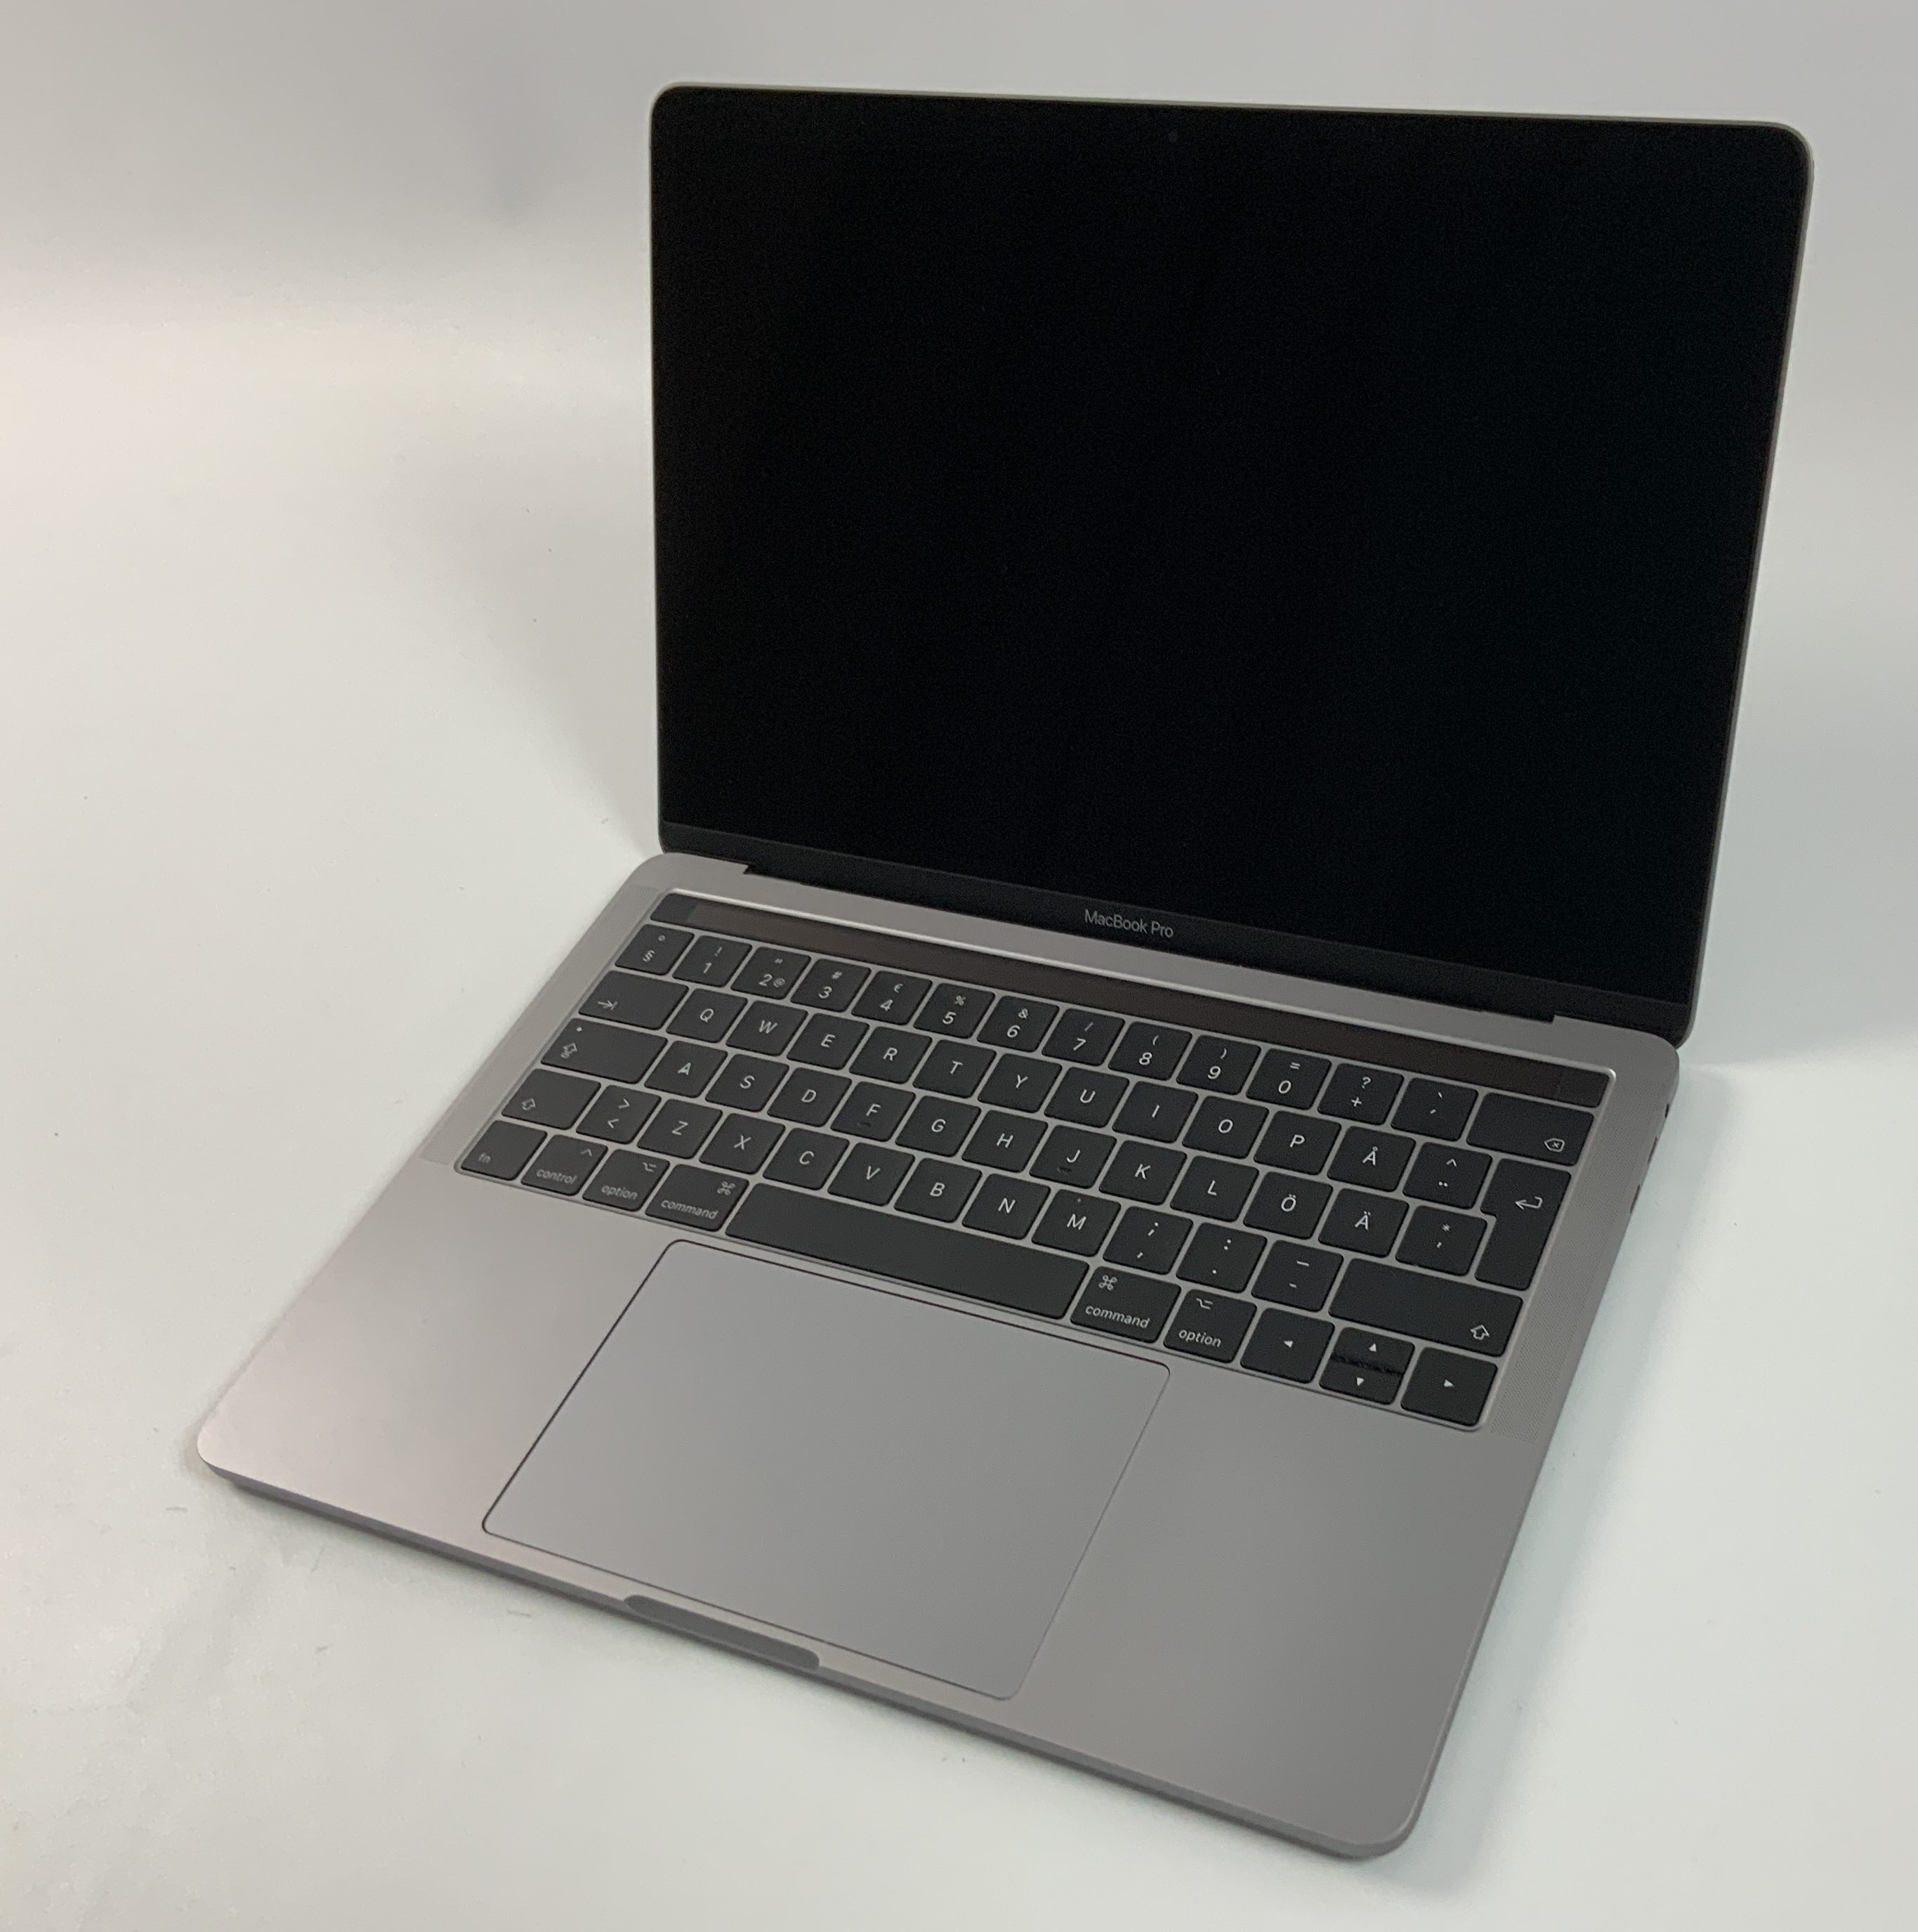 MacBook Pro 13" 4TBT Mid 2017 (Intel Core i5 3.1 GHz 16 GB RAM 512 GB SSD), Space Gray, Intel Core i5 3.1 GHz, 16 GB RAM, 512 GB SSD, image 1